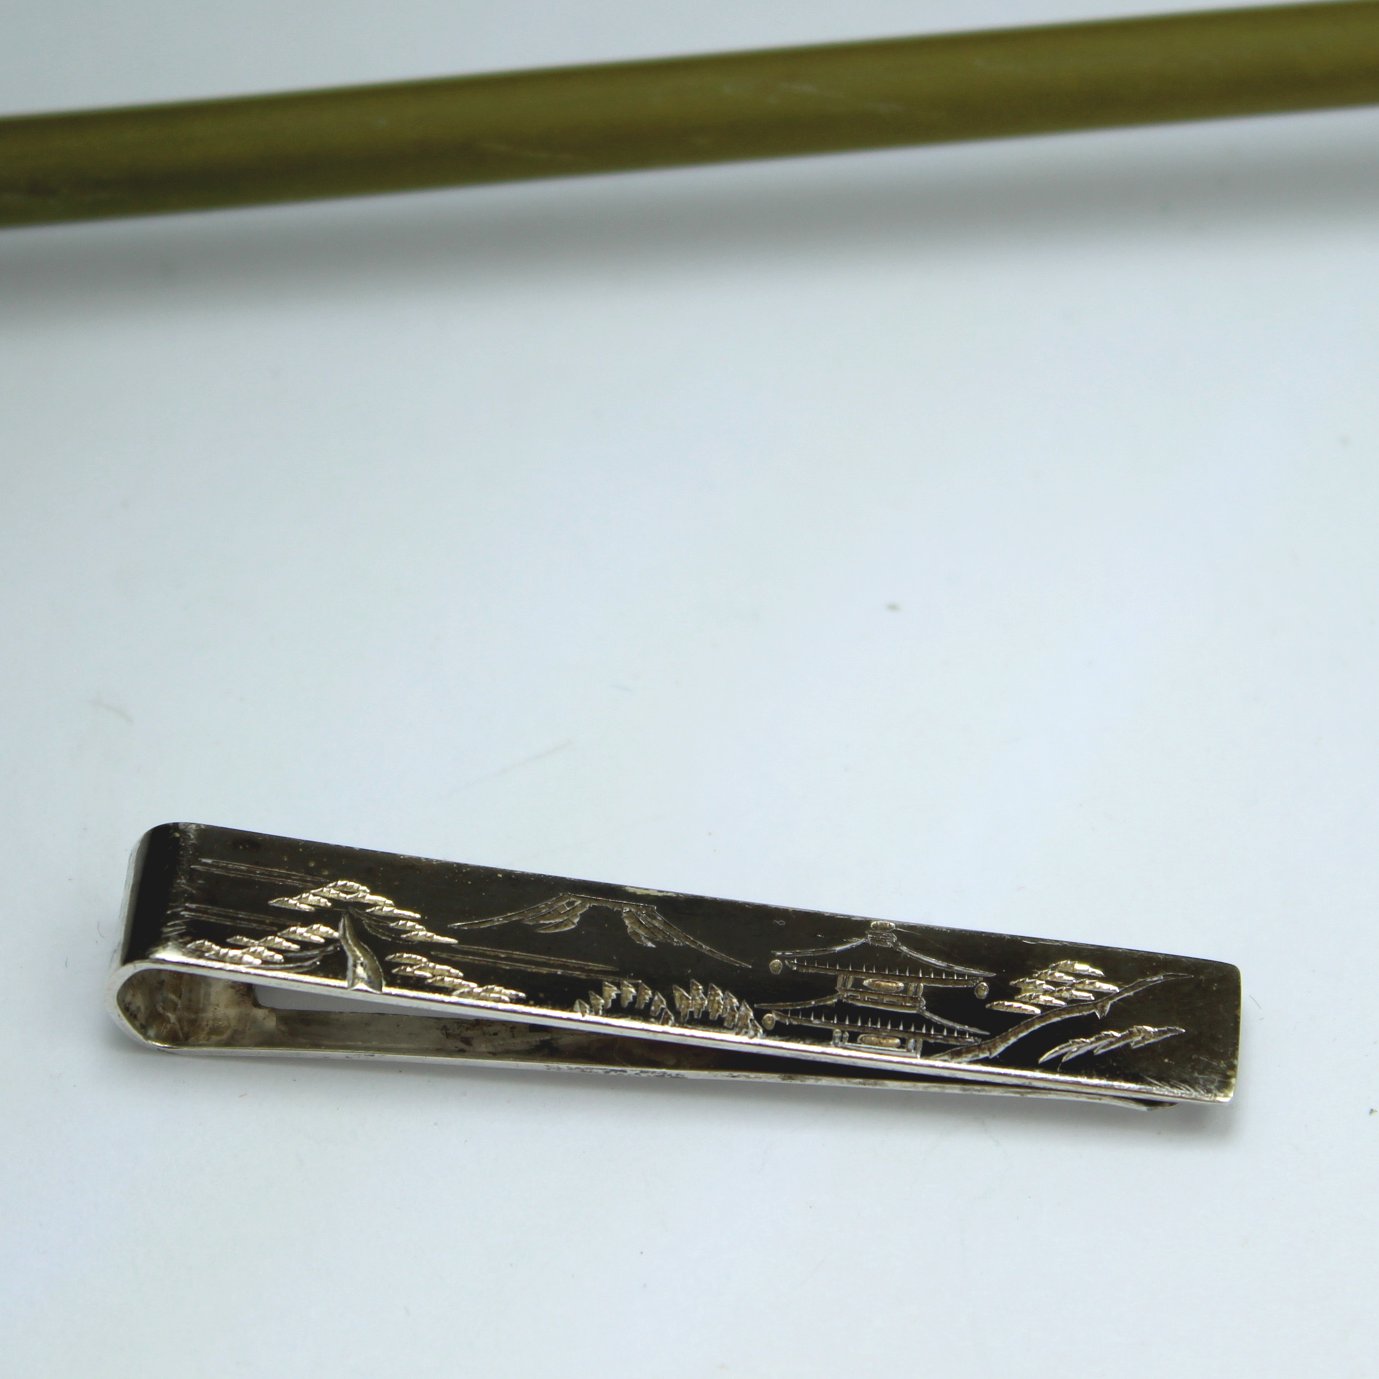 Old Damascene Sterling 950 Tie Bar Clip Black Silver "S" in Circle Mark money clip